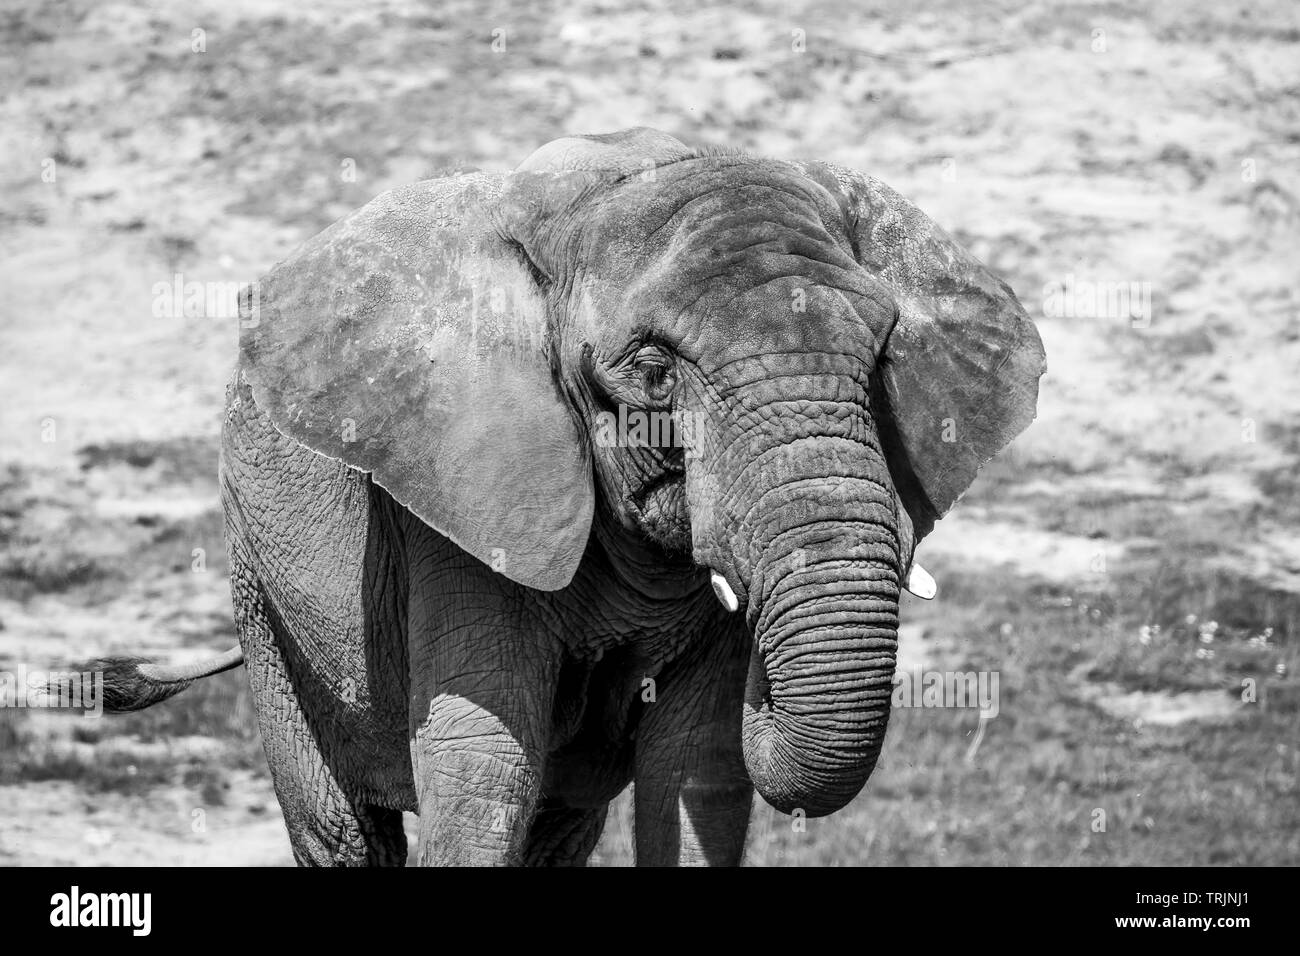 Fotografia di animali in bianco e nero: Vista ravvicinata dell'elefante di mucca africano isolato (Loxodonta africana) in cattività all'aperto sotto il sole Foto Stock